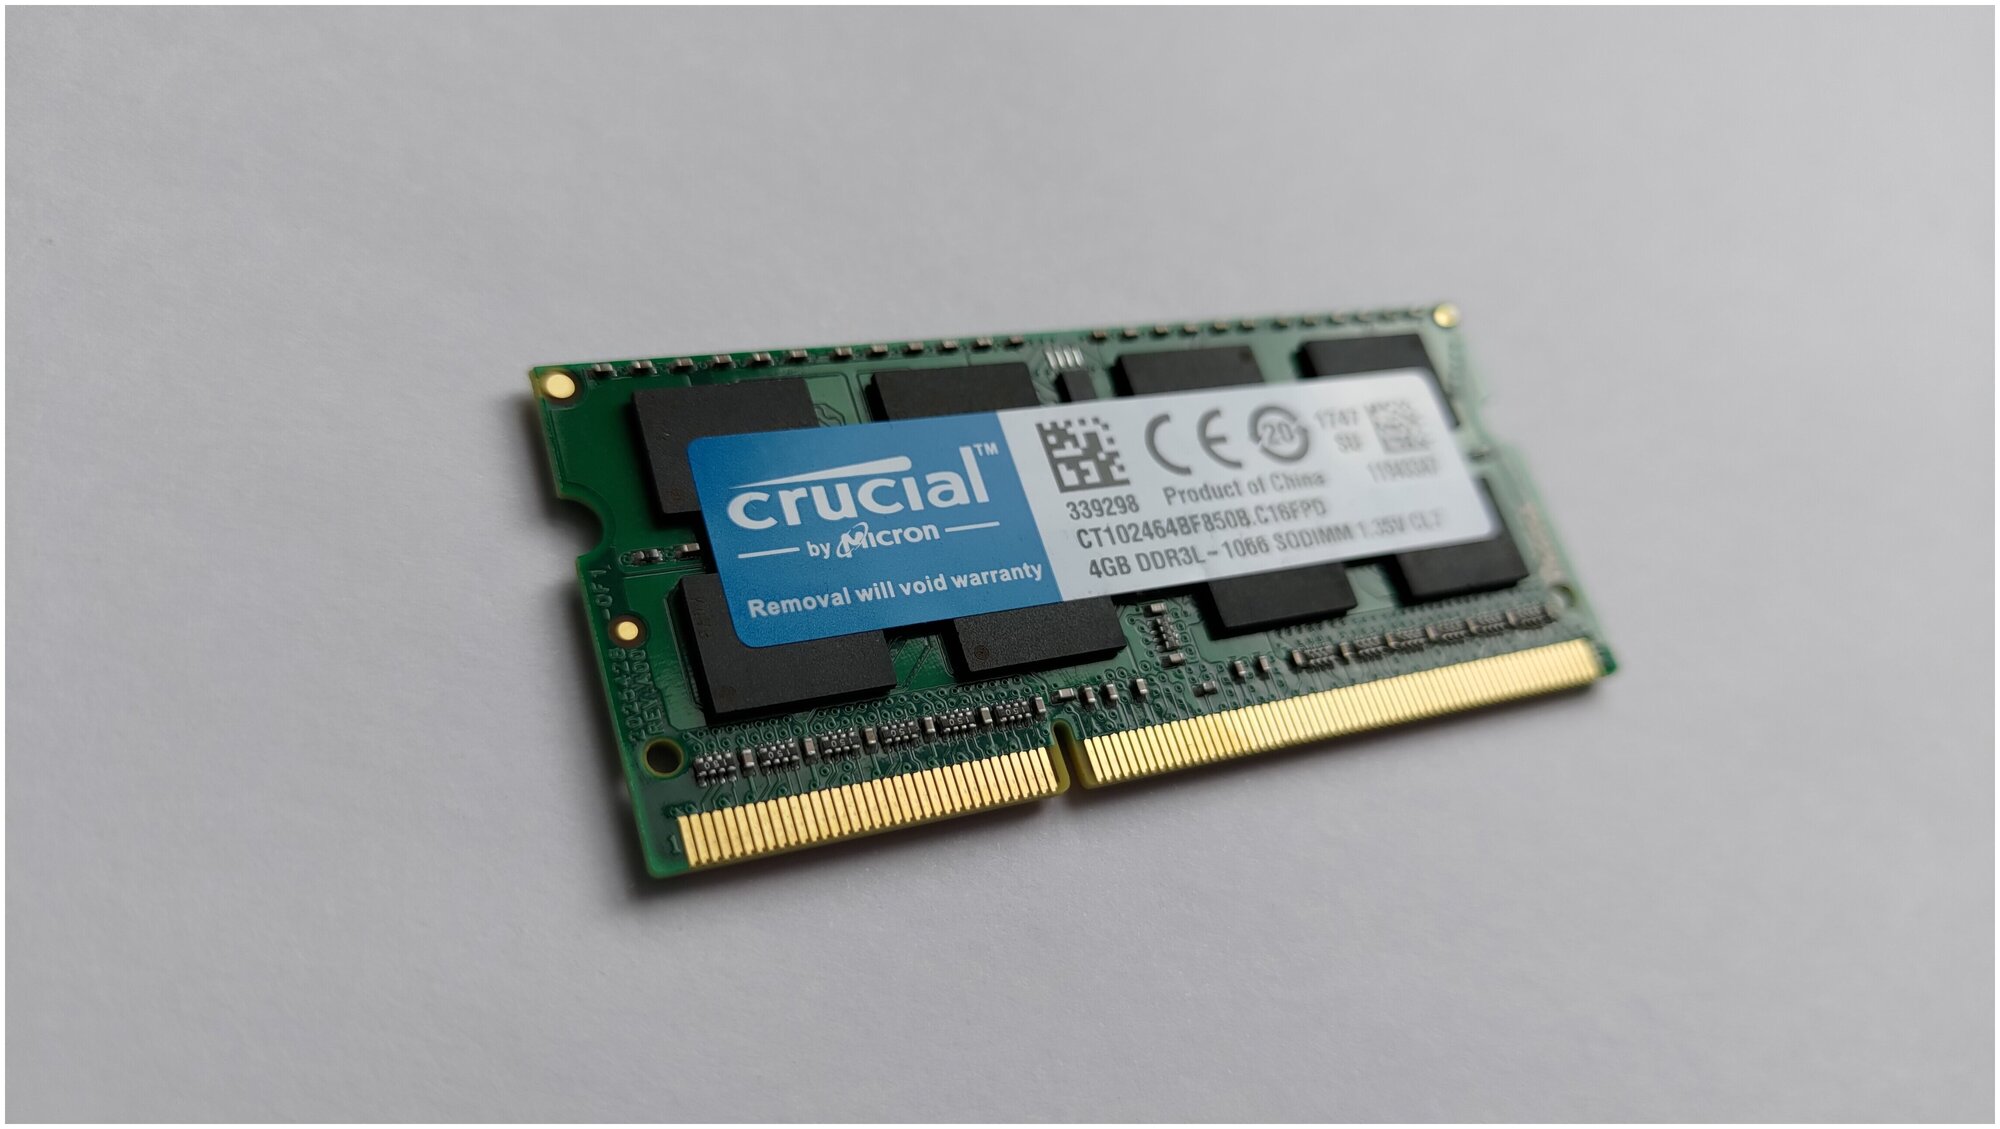 Оперативная память CRUCIAL 1.5в 1.35в DDR3L 4 ГБ 1066 MHz SO-DIMM PC3L-8500 1x4 ГБ (CT102464BF850B.C16FPD) для ноутбука